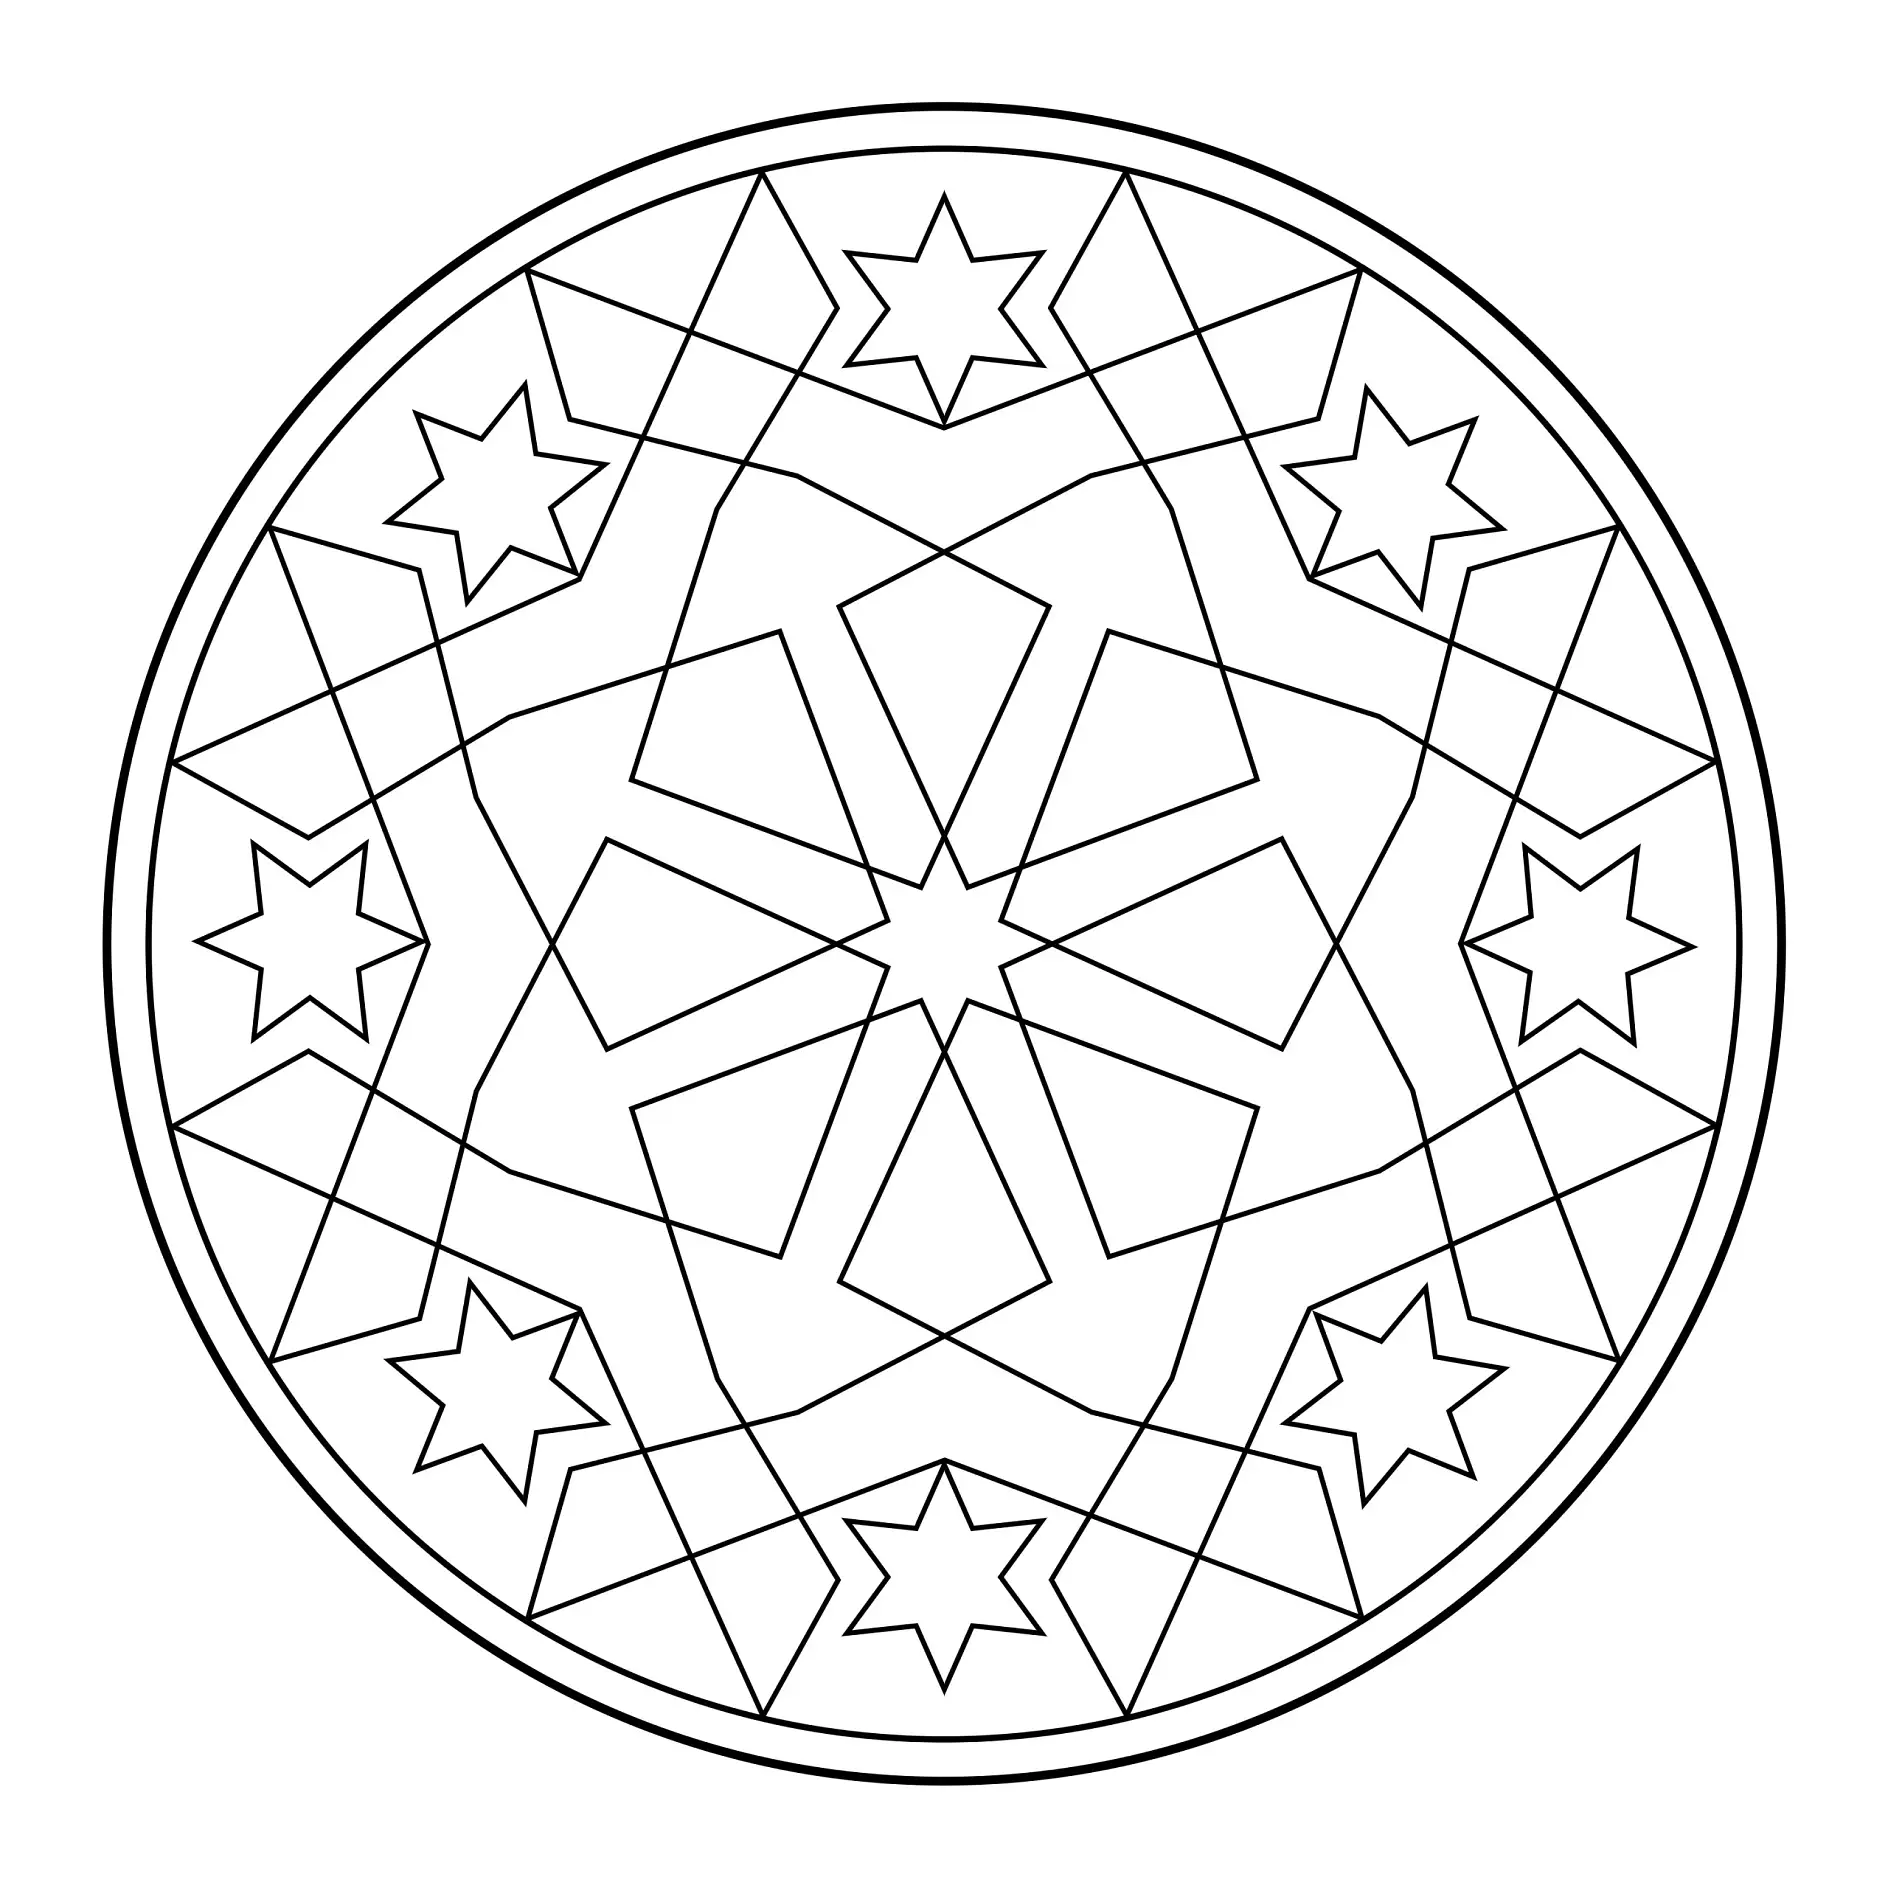 Ausmalbild Mandala mit Sternen und geometrischen Mustern